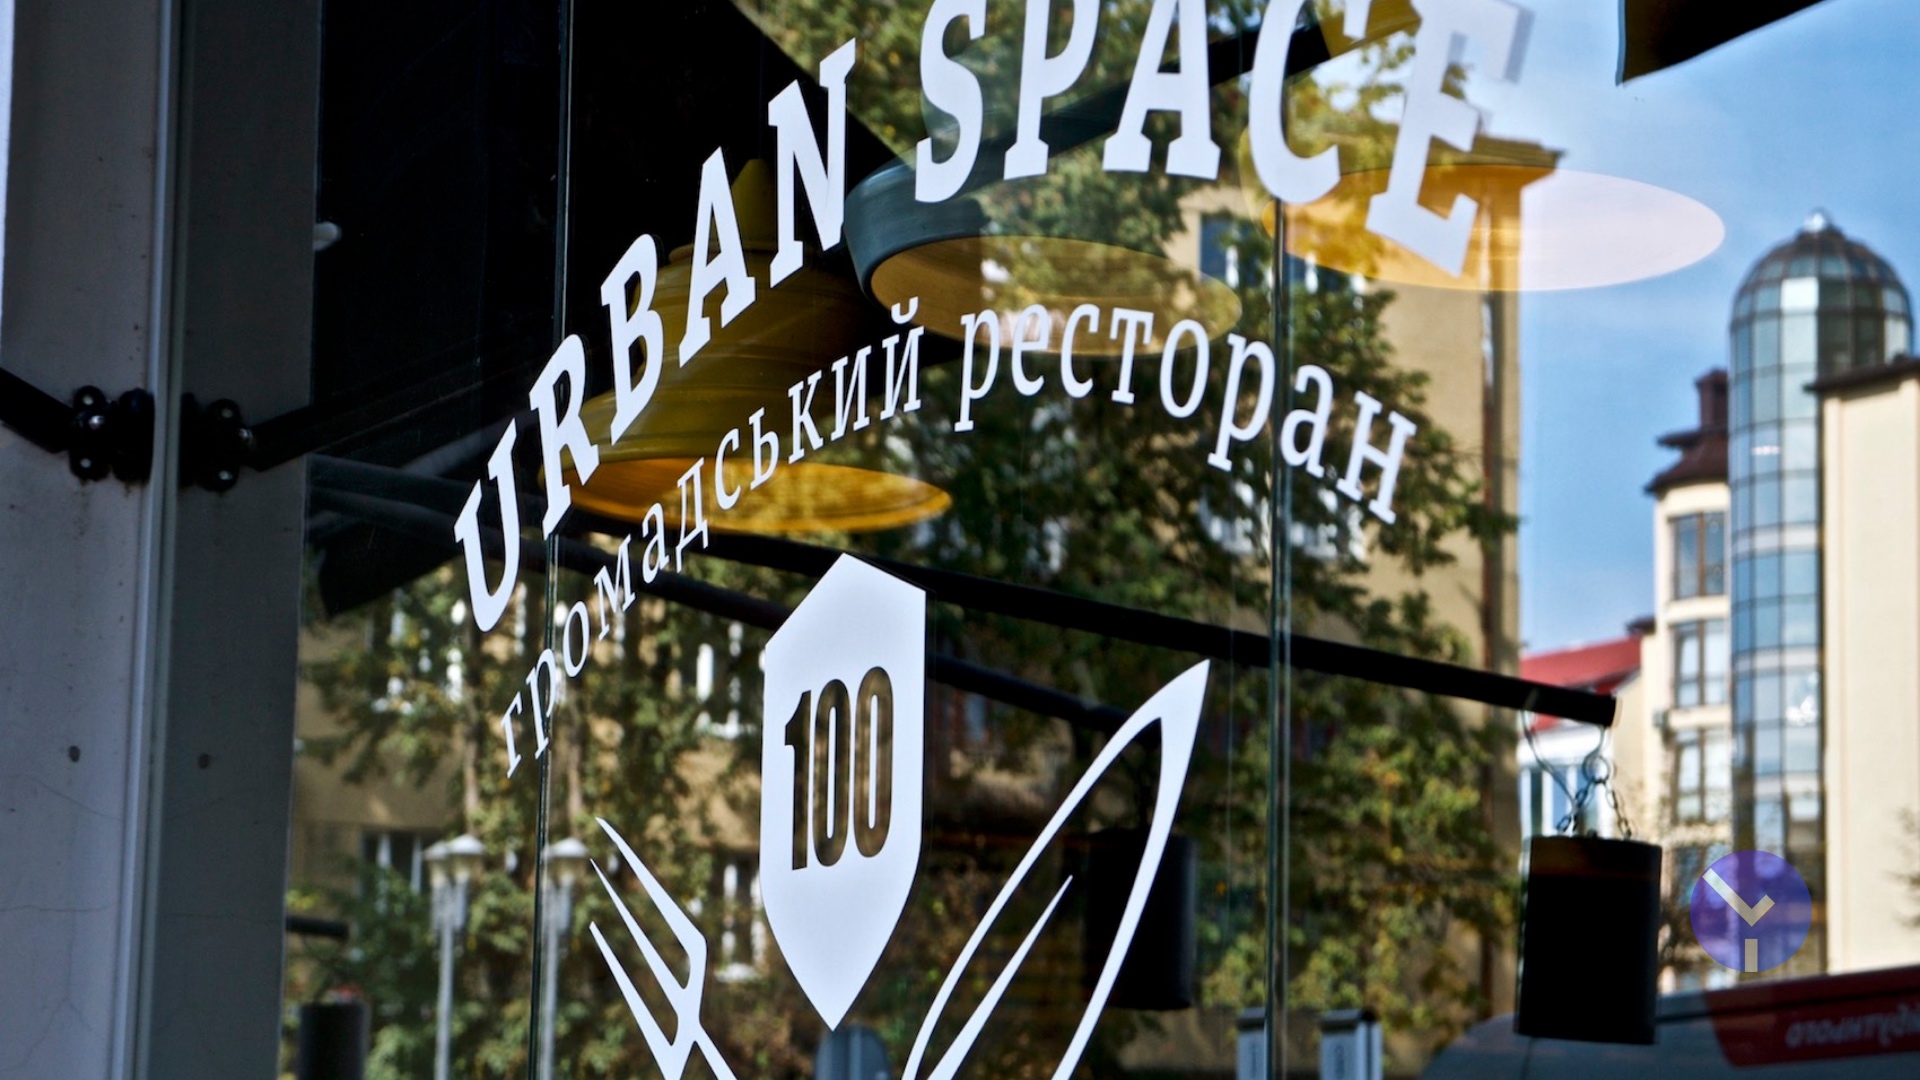 Ідея, ресторан, радіостанція, зміна сенсів — що таке Urban Space